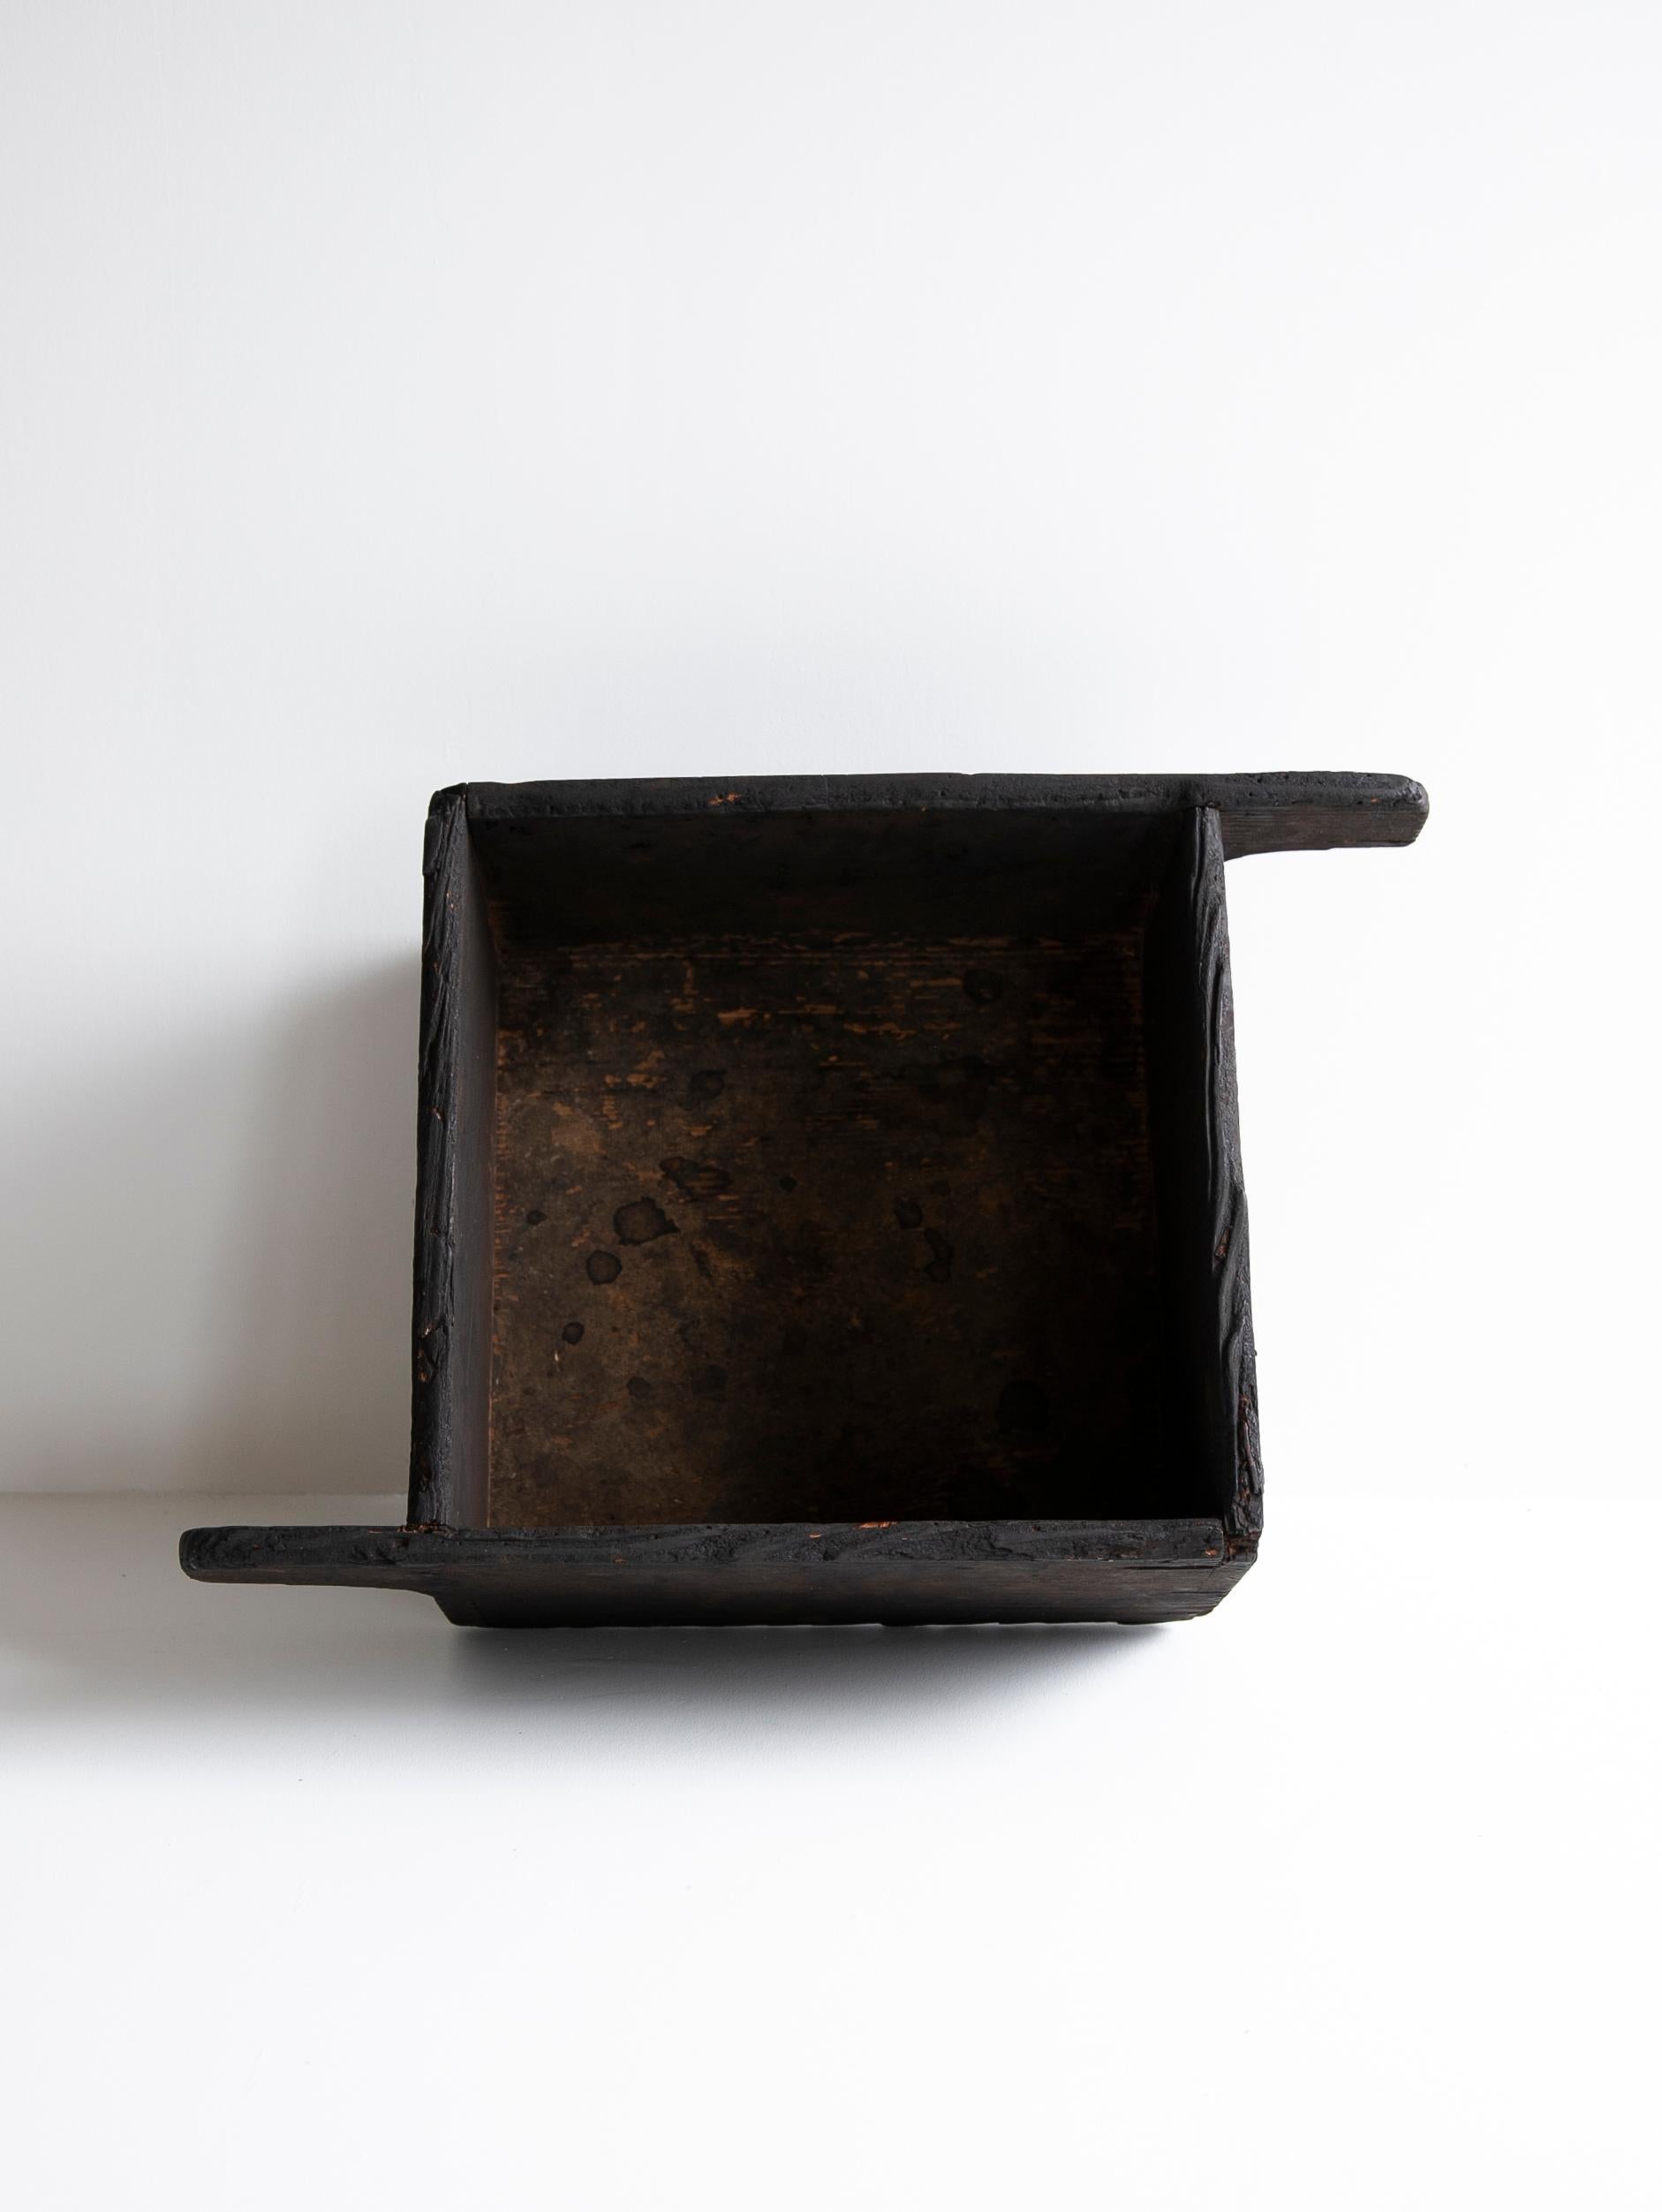 Cedar Japanese Antique Wooden Bowl 1860s-1900s/Mingei Wabisabi Primitive Object